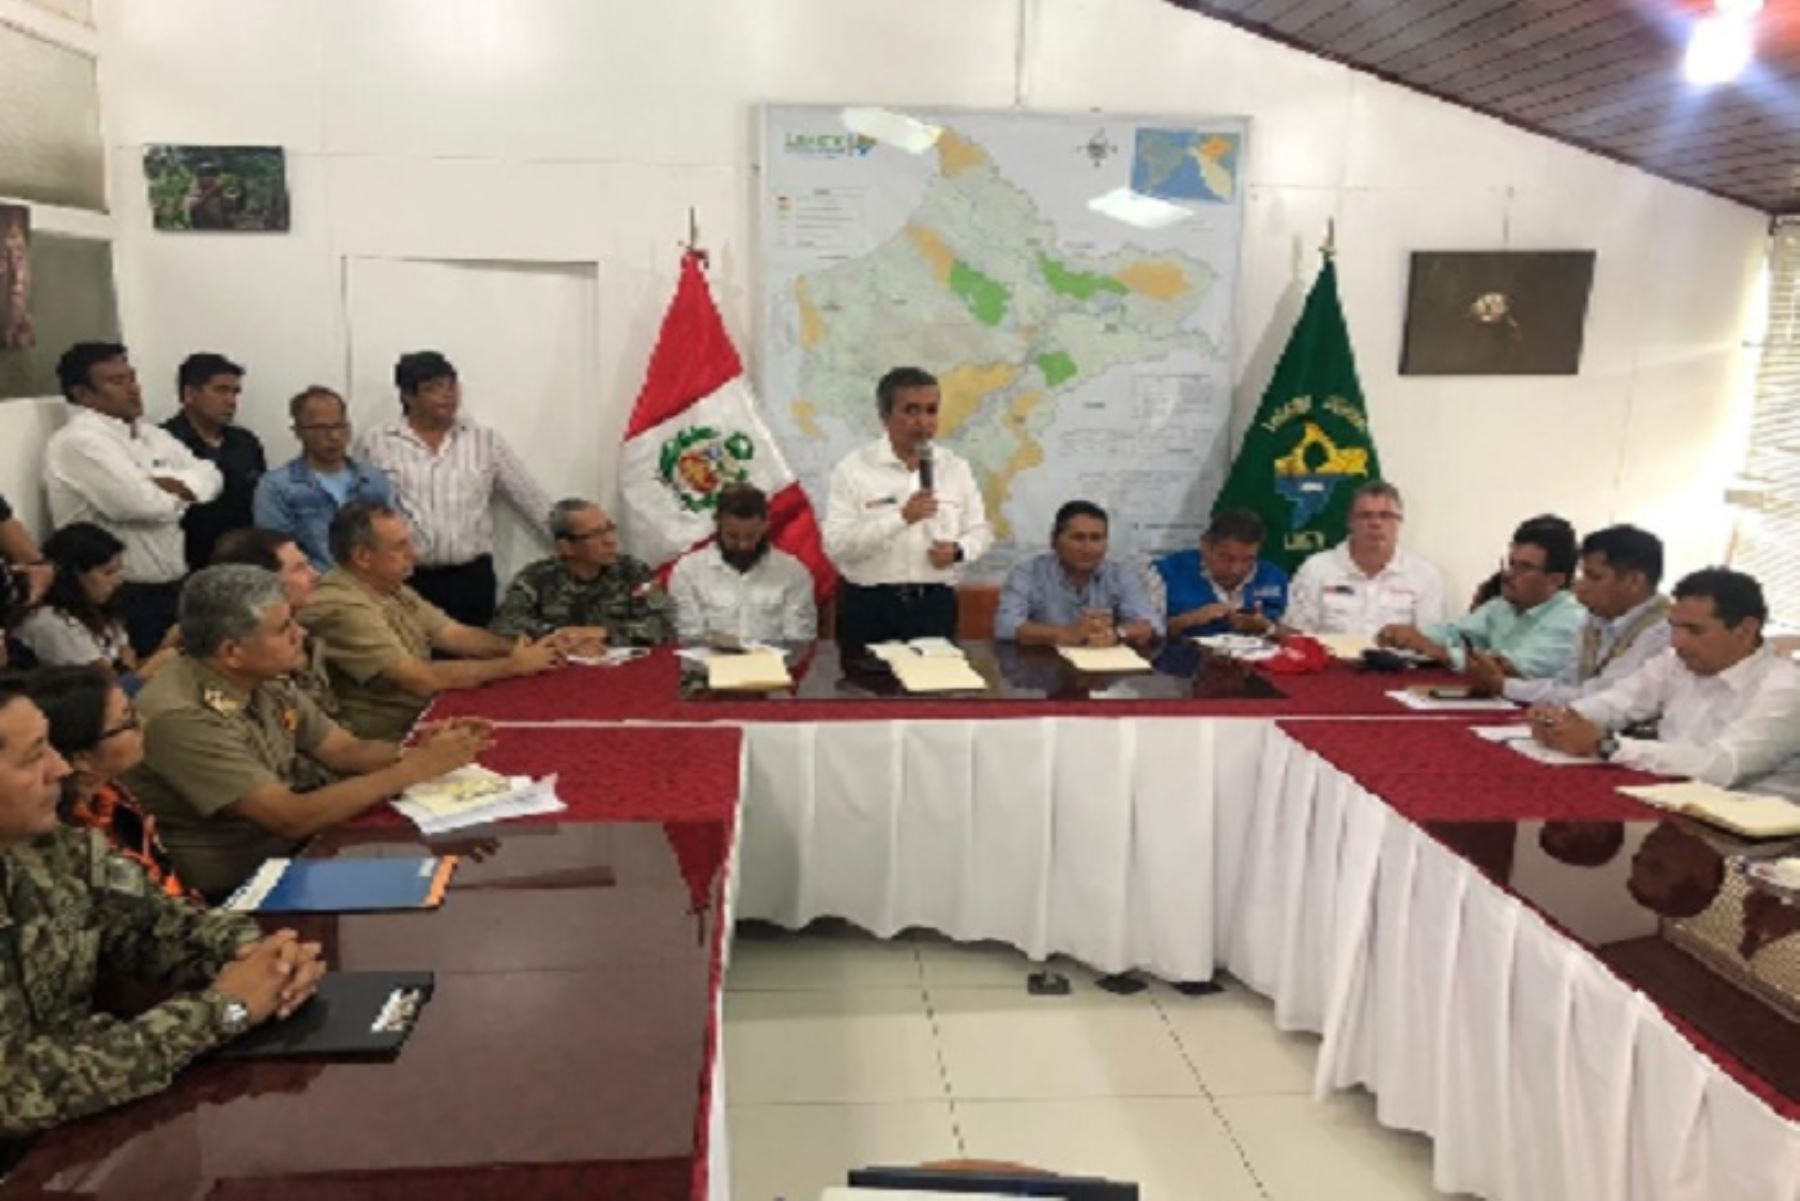 El ministro de la Producción, Raúl Pérez- Reyes se reunió en Loreto con las autoridades de la región y coordinó acciones de prevención o mitigación ante los desastres naturales ocasionados por las intensas lluvias en las distintas partes del país.